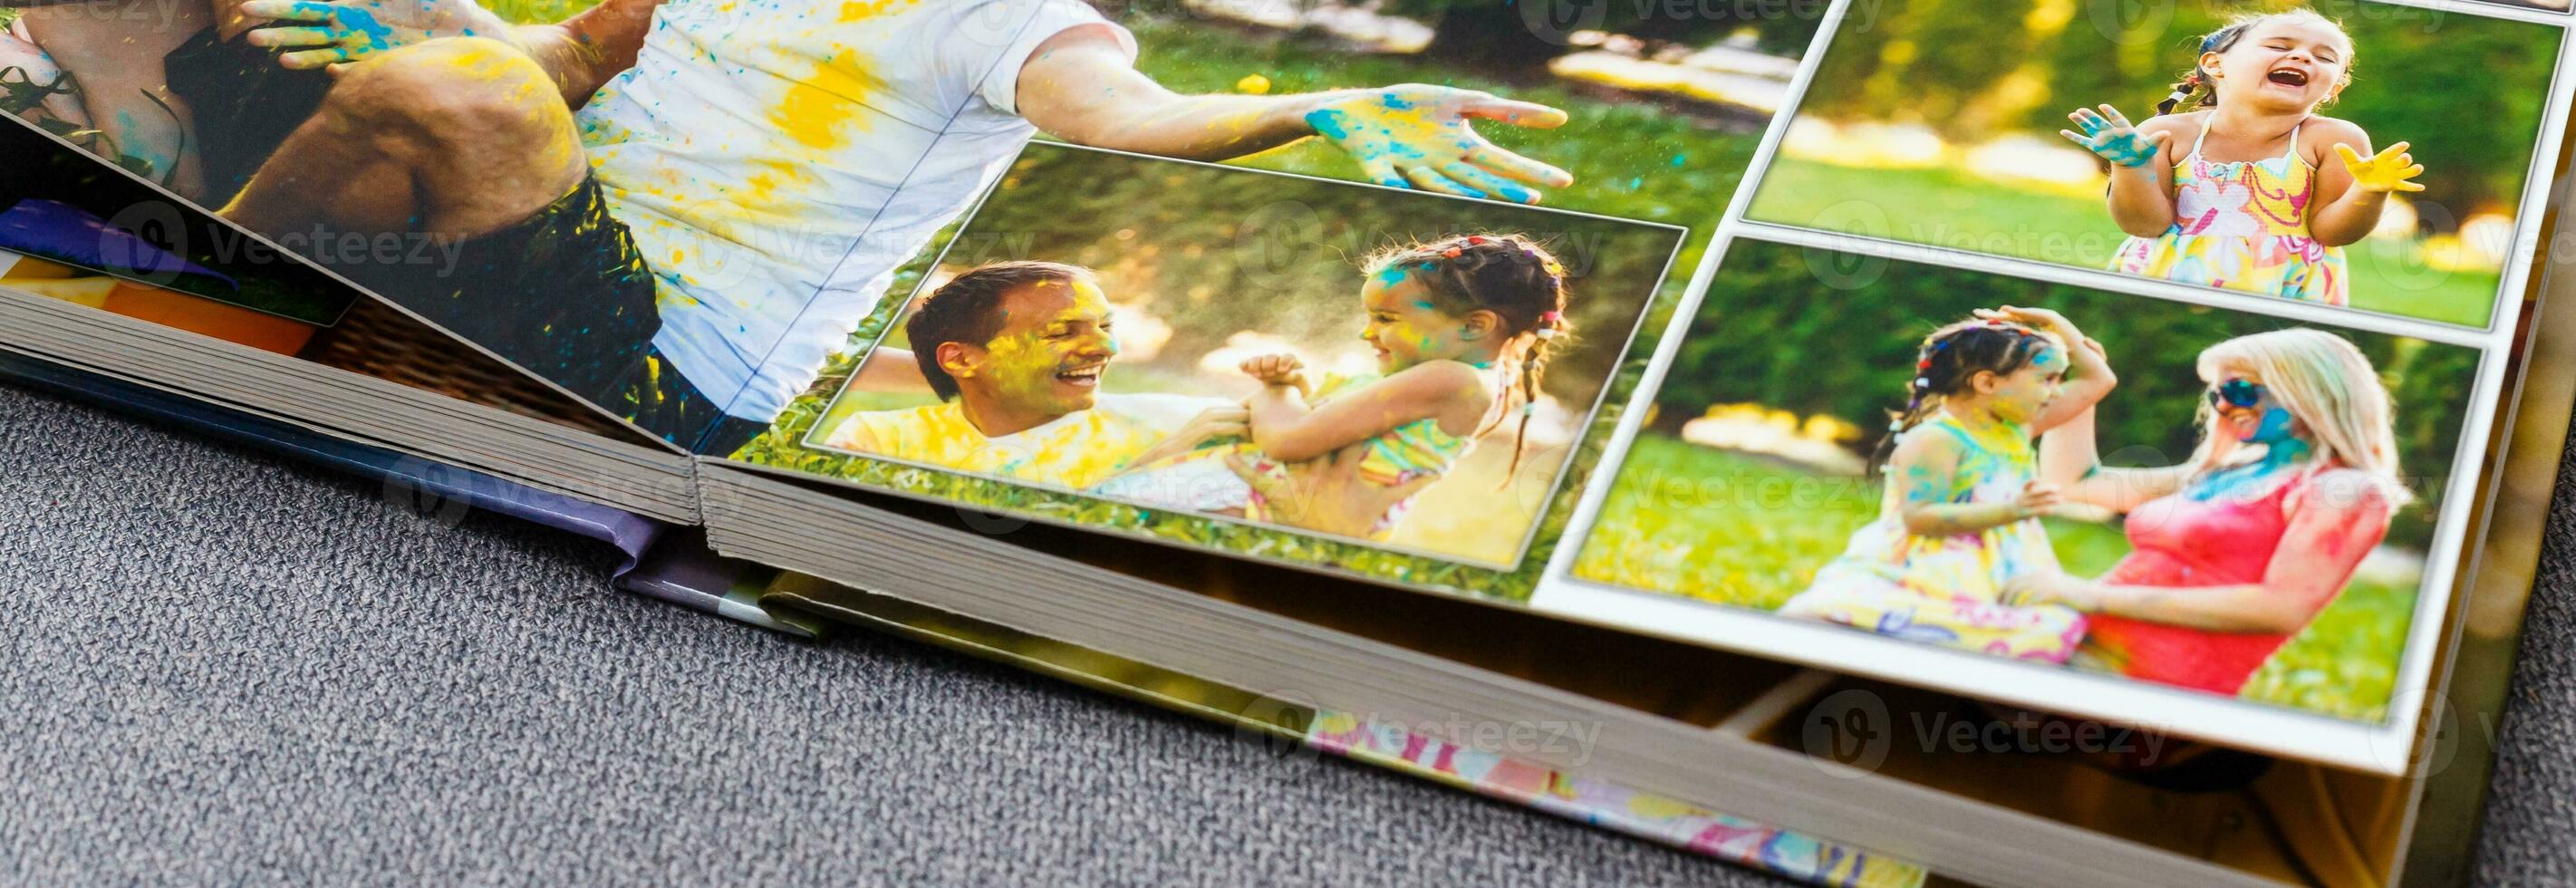 Fotobuch Album auf Deck Tabelle mit Reise Fotos